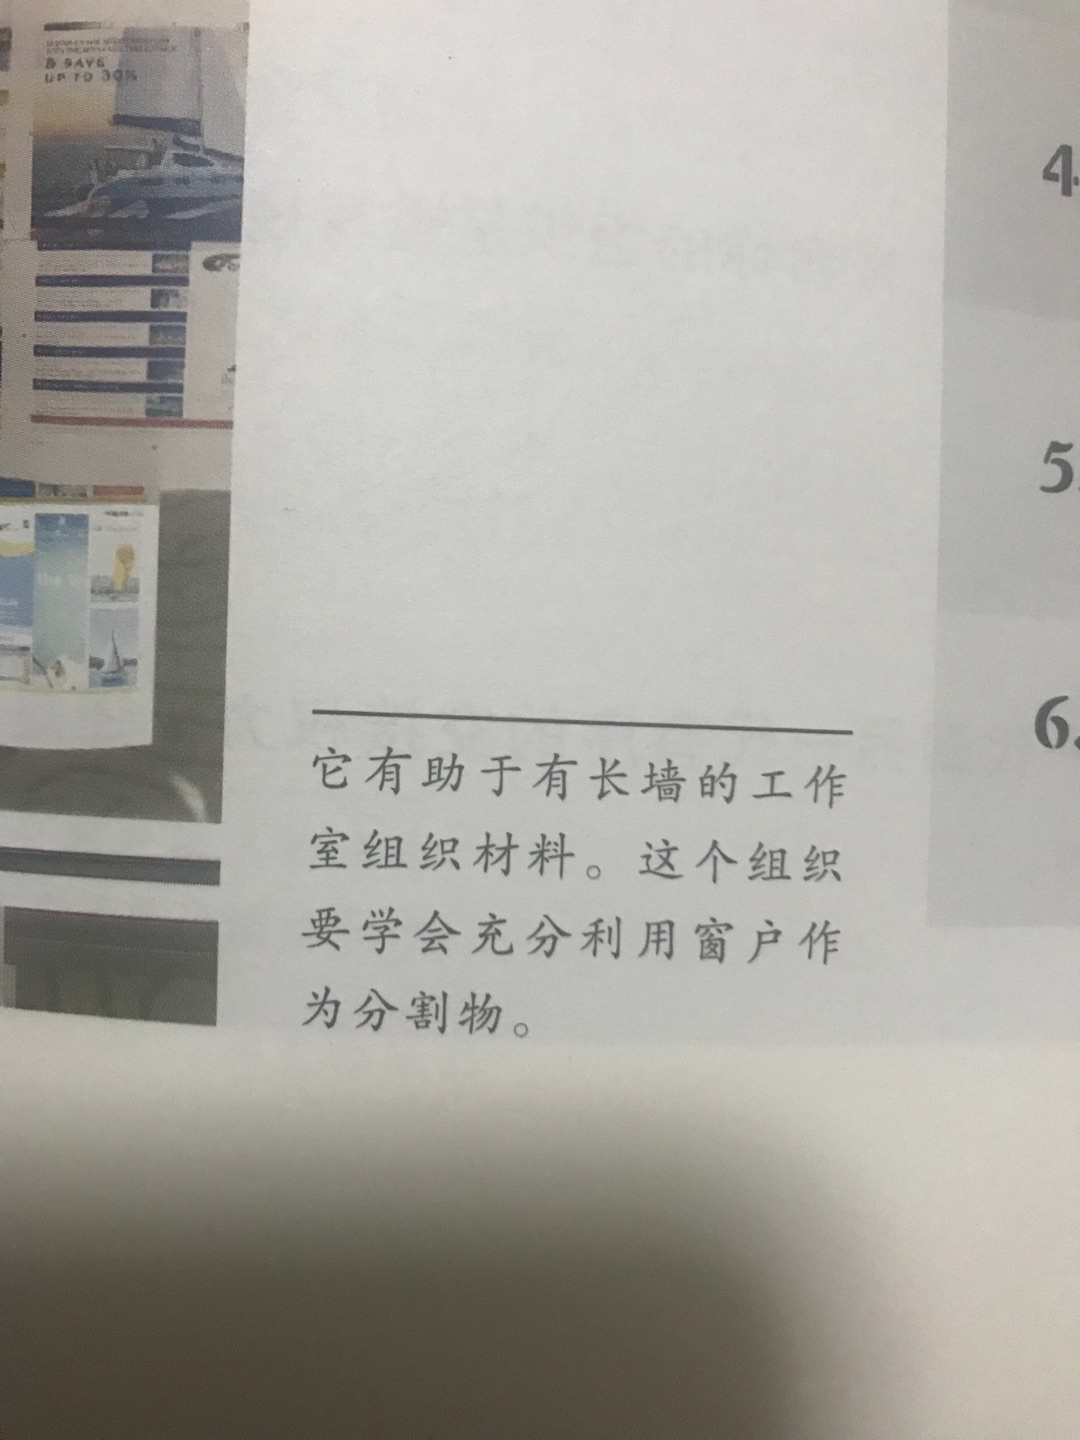 请问梁树广博士,你确定翻译时不是用机器翻译的？